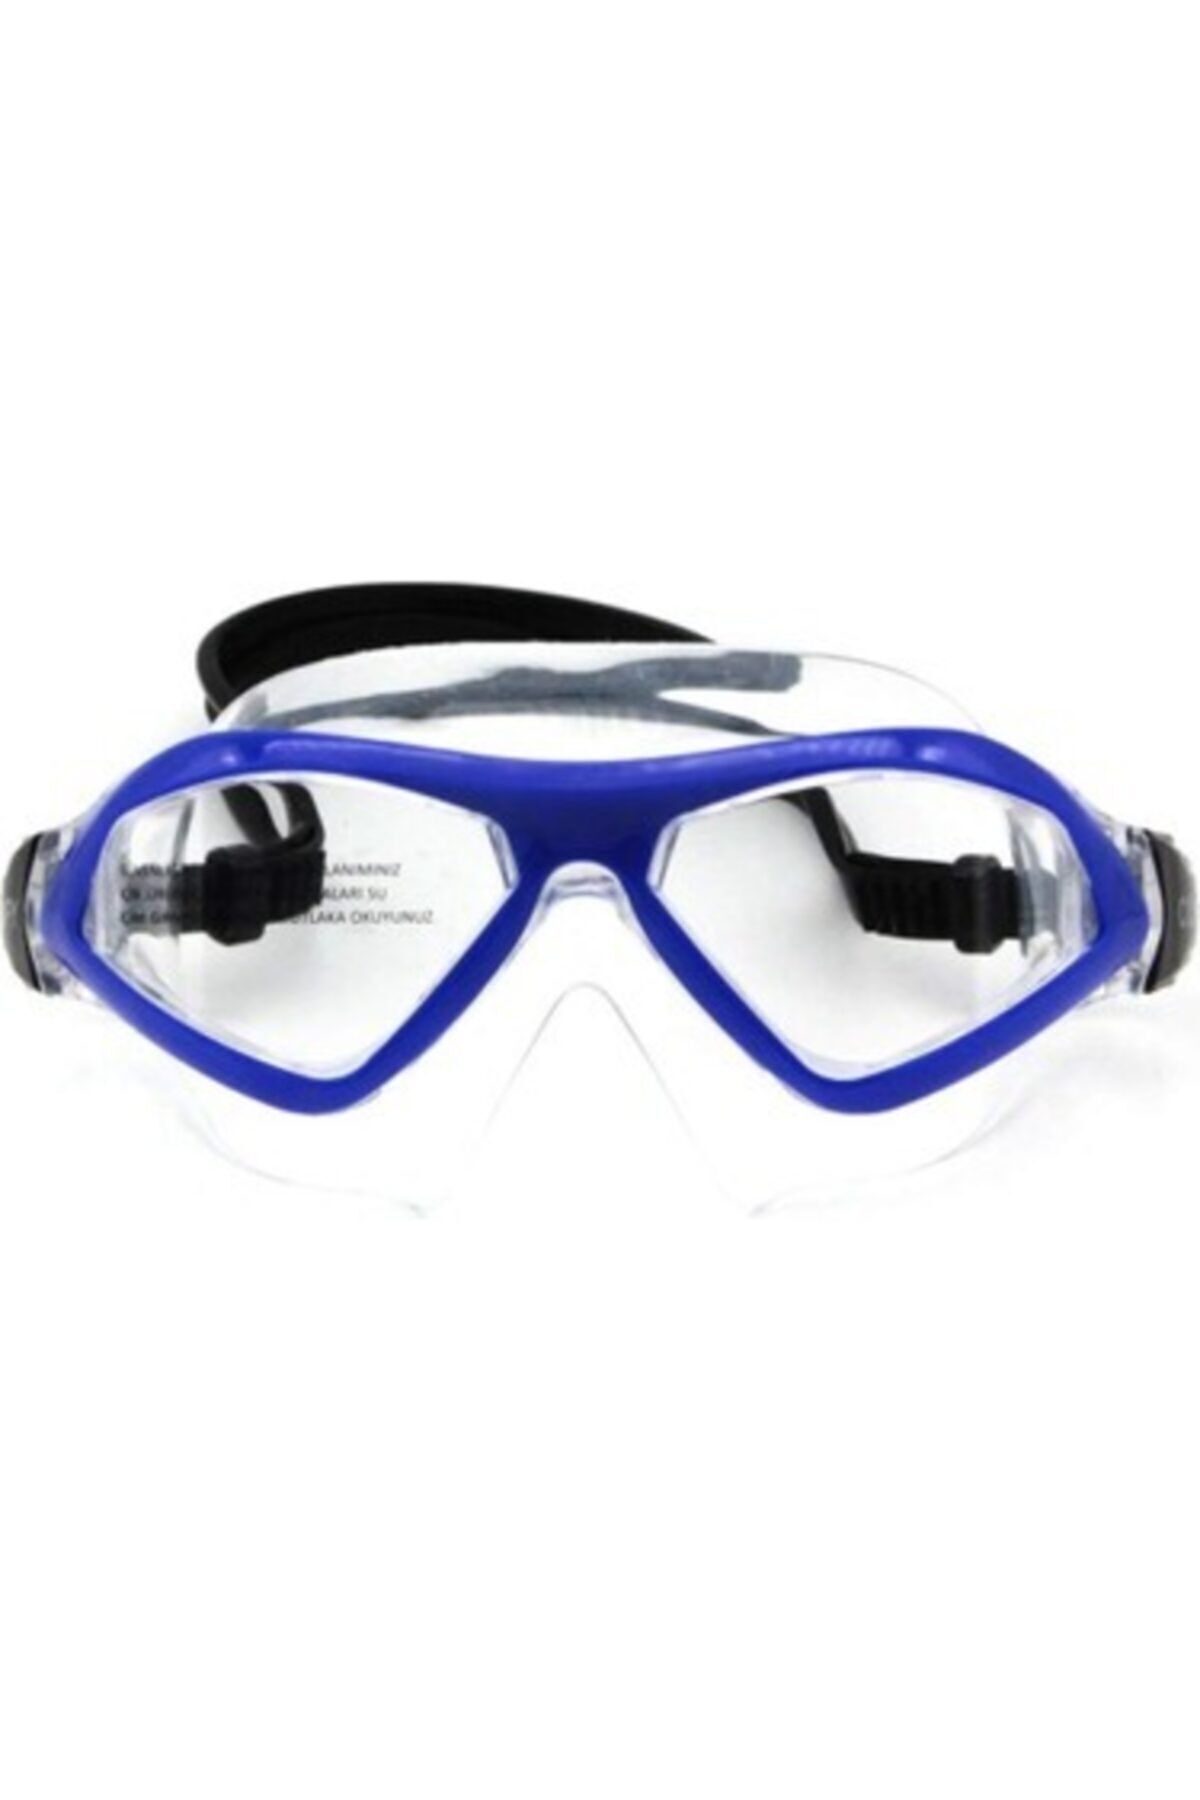 Apnea - Comfy Junior Yüzücü Gözlüğü Mavi Şeffaf